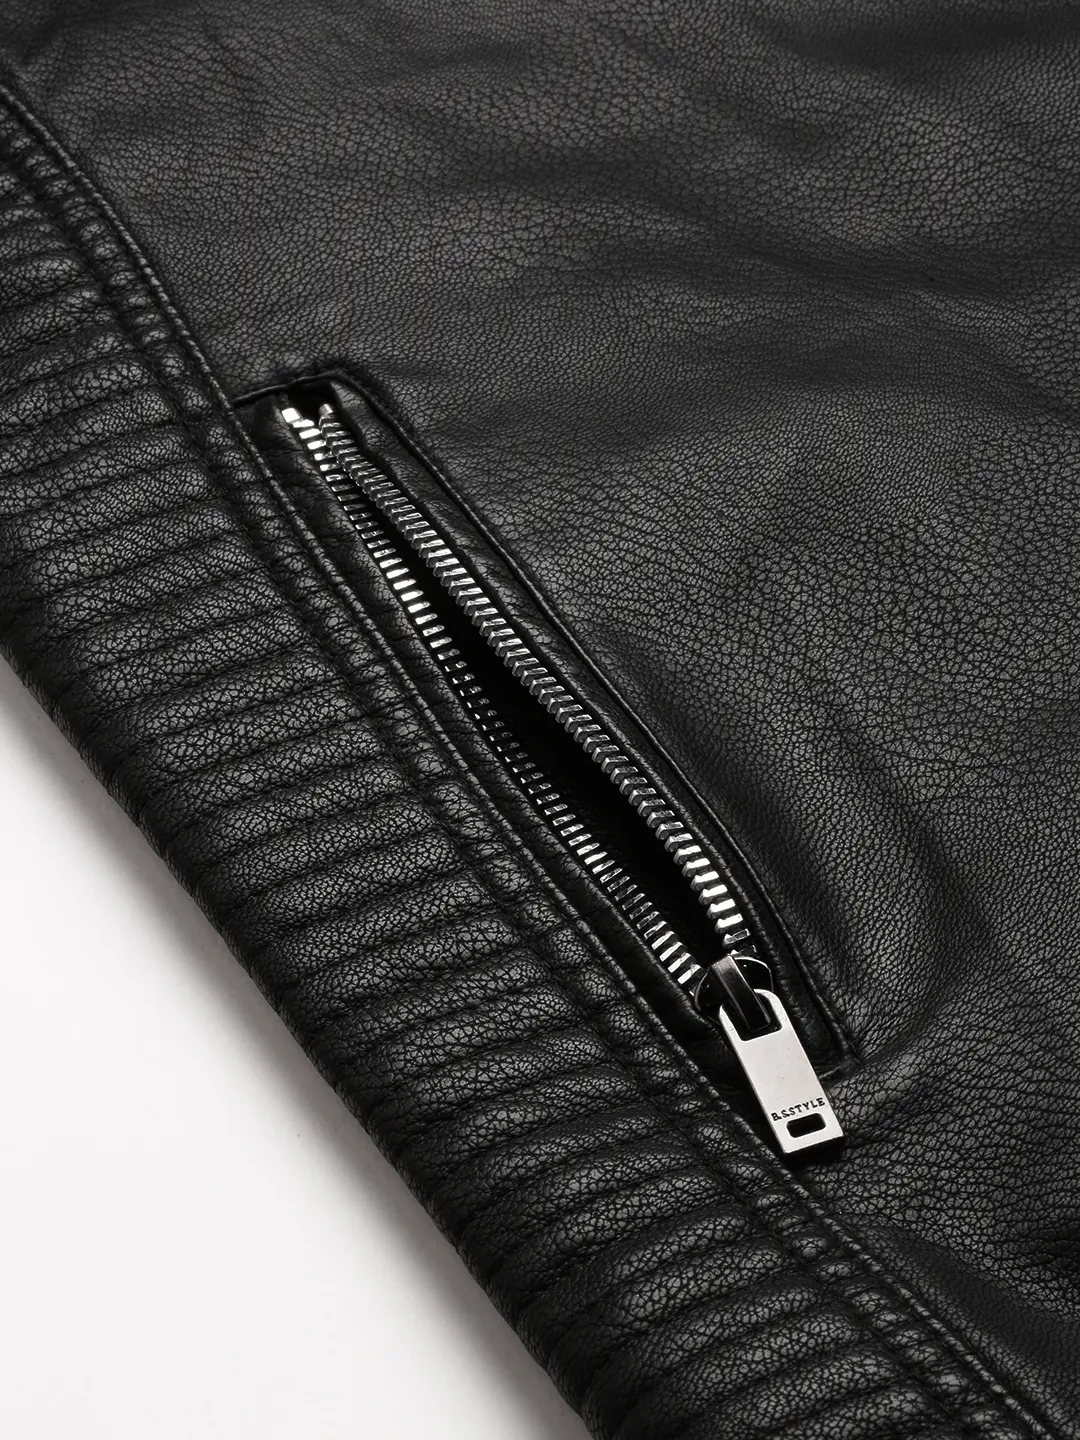 SHOWOFF Men's Mandarin Collar Black Solid Leather Jacket